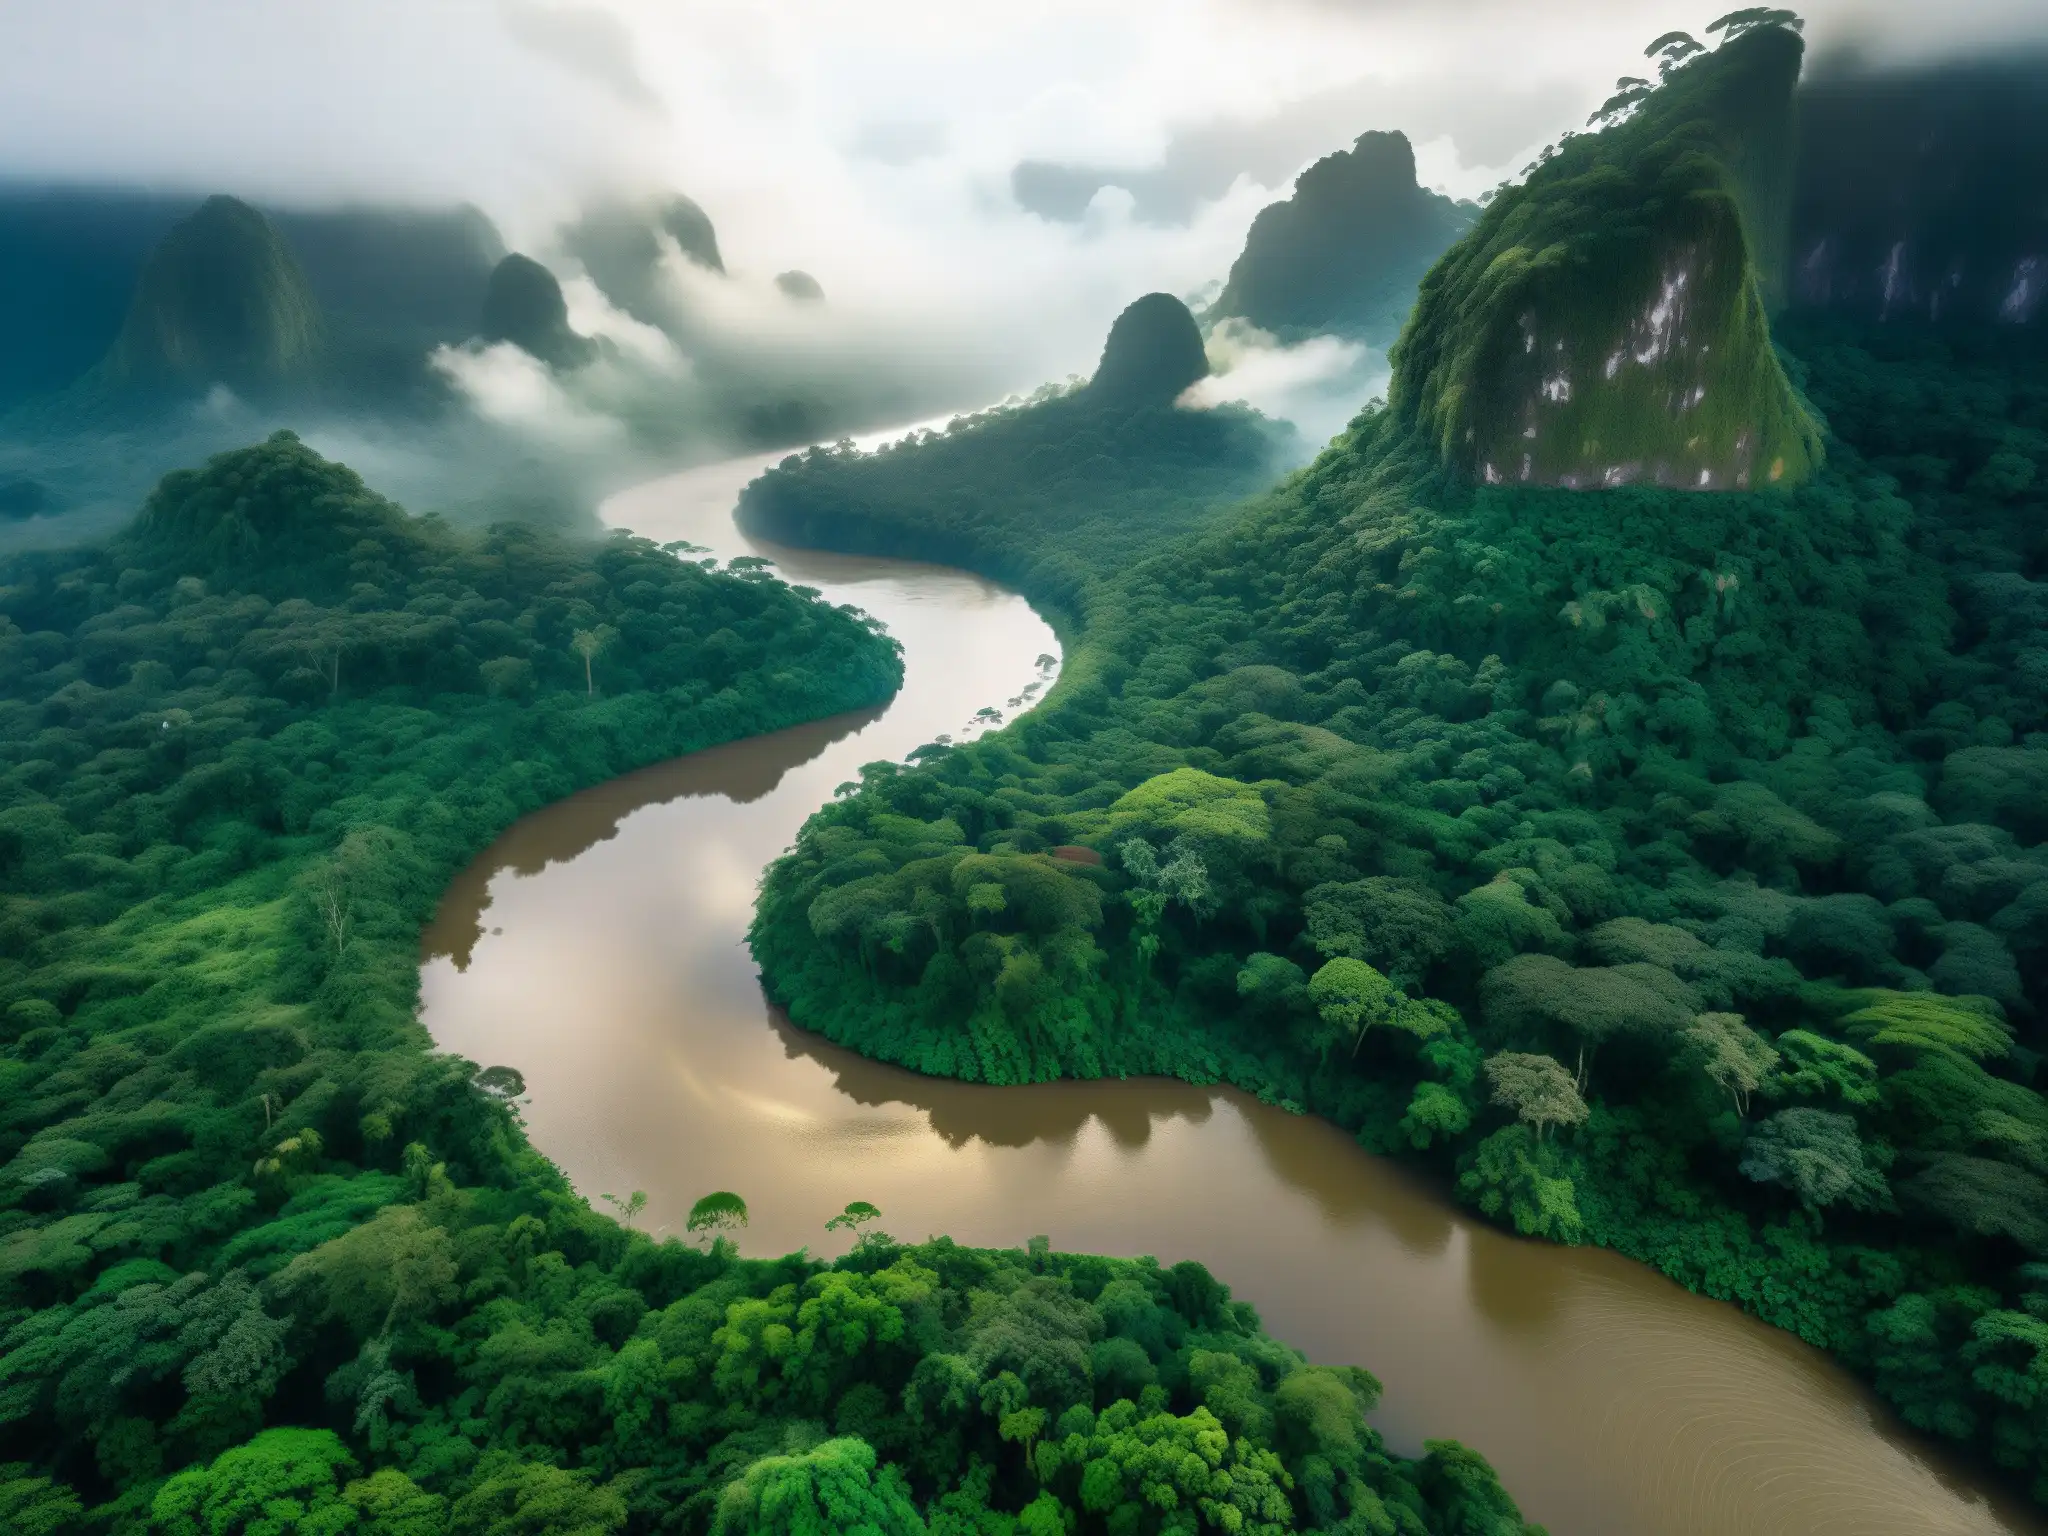 Sirena de los ríos en Sudamérica emerge misteriosa de un río amazónico, rodeada de exuberante vegetación y misterioso vapor